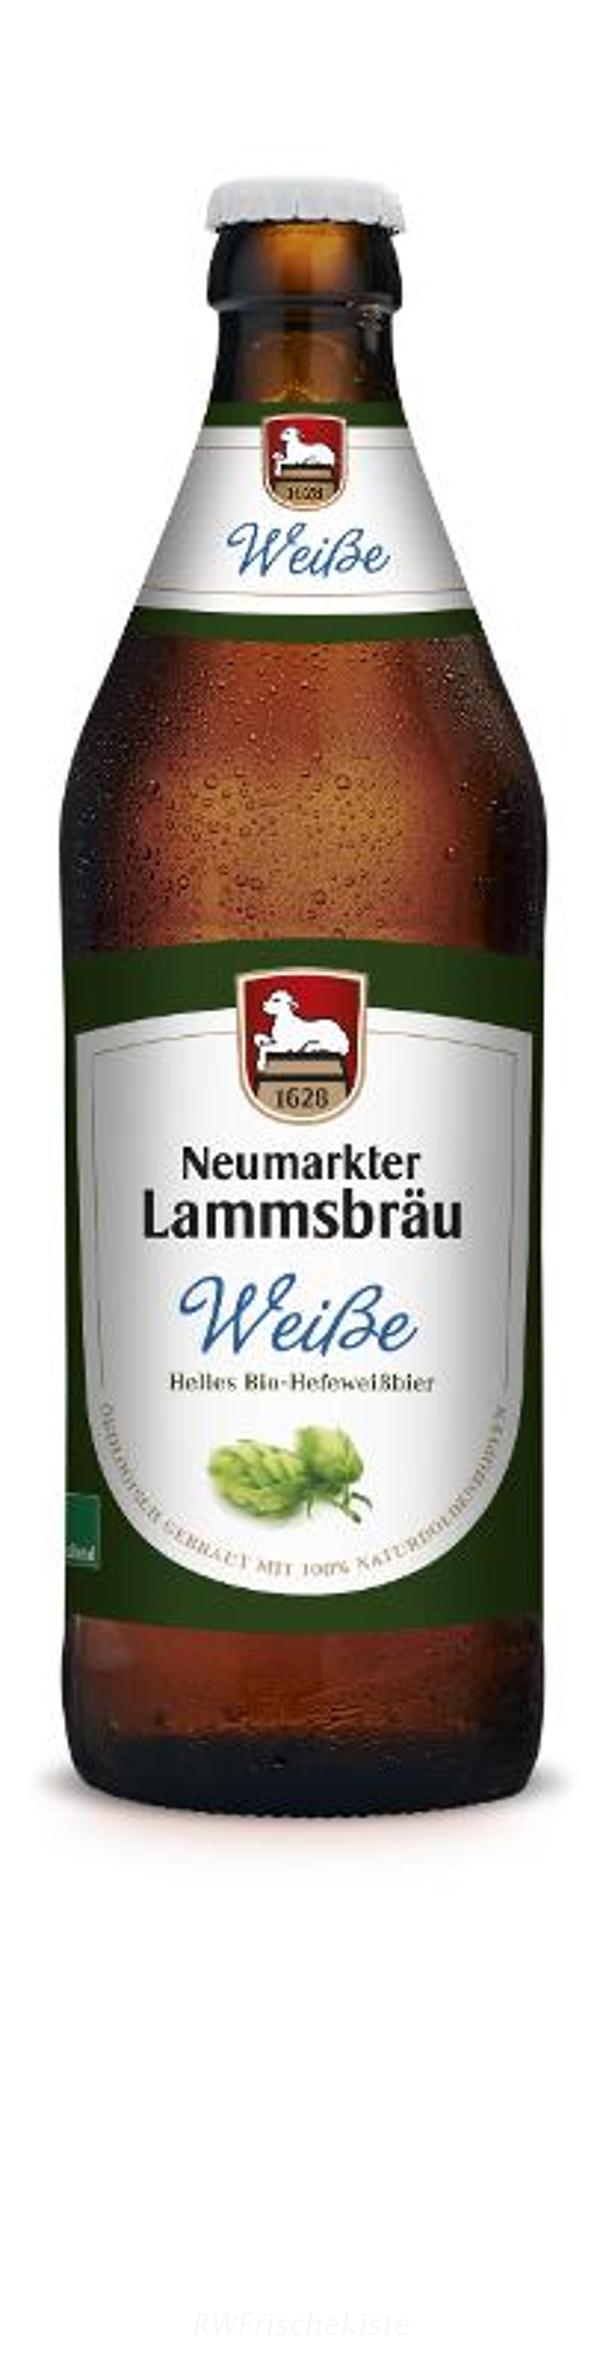 Produktfoto zu Lammsbräu Weisse (helles Hefe) Kasten